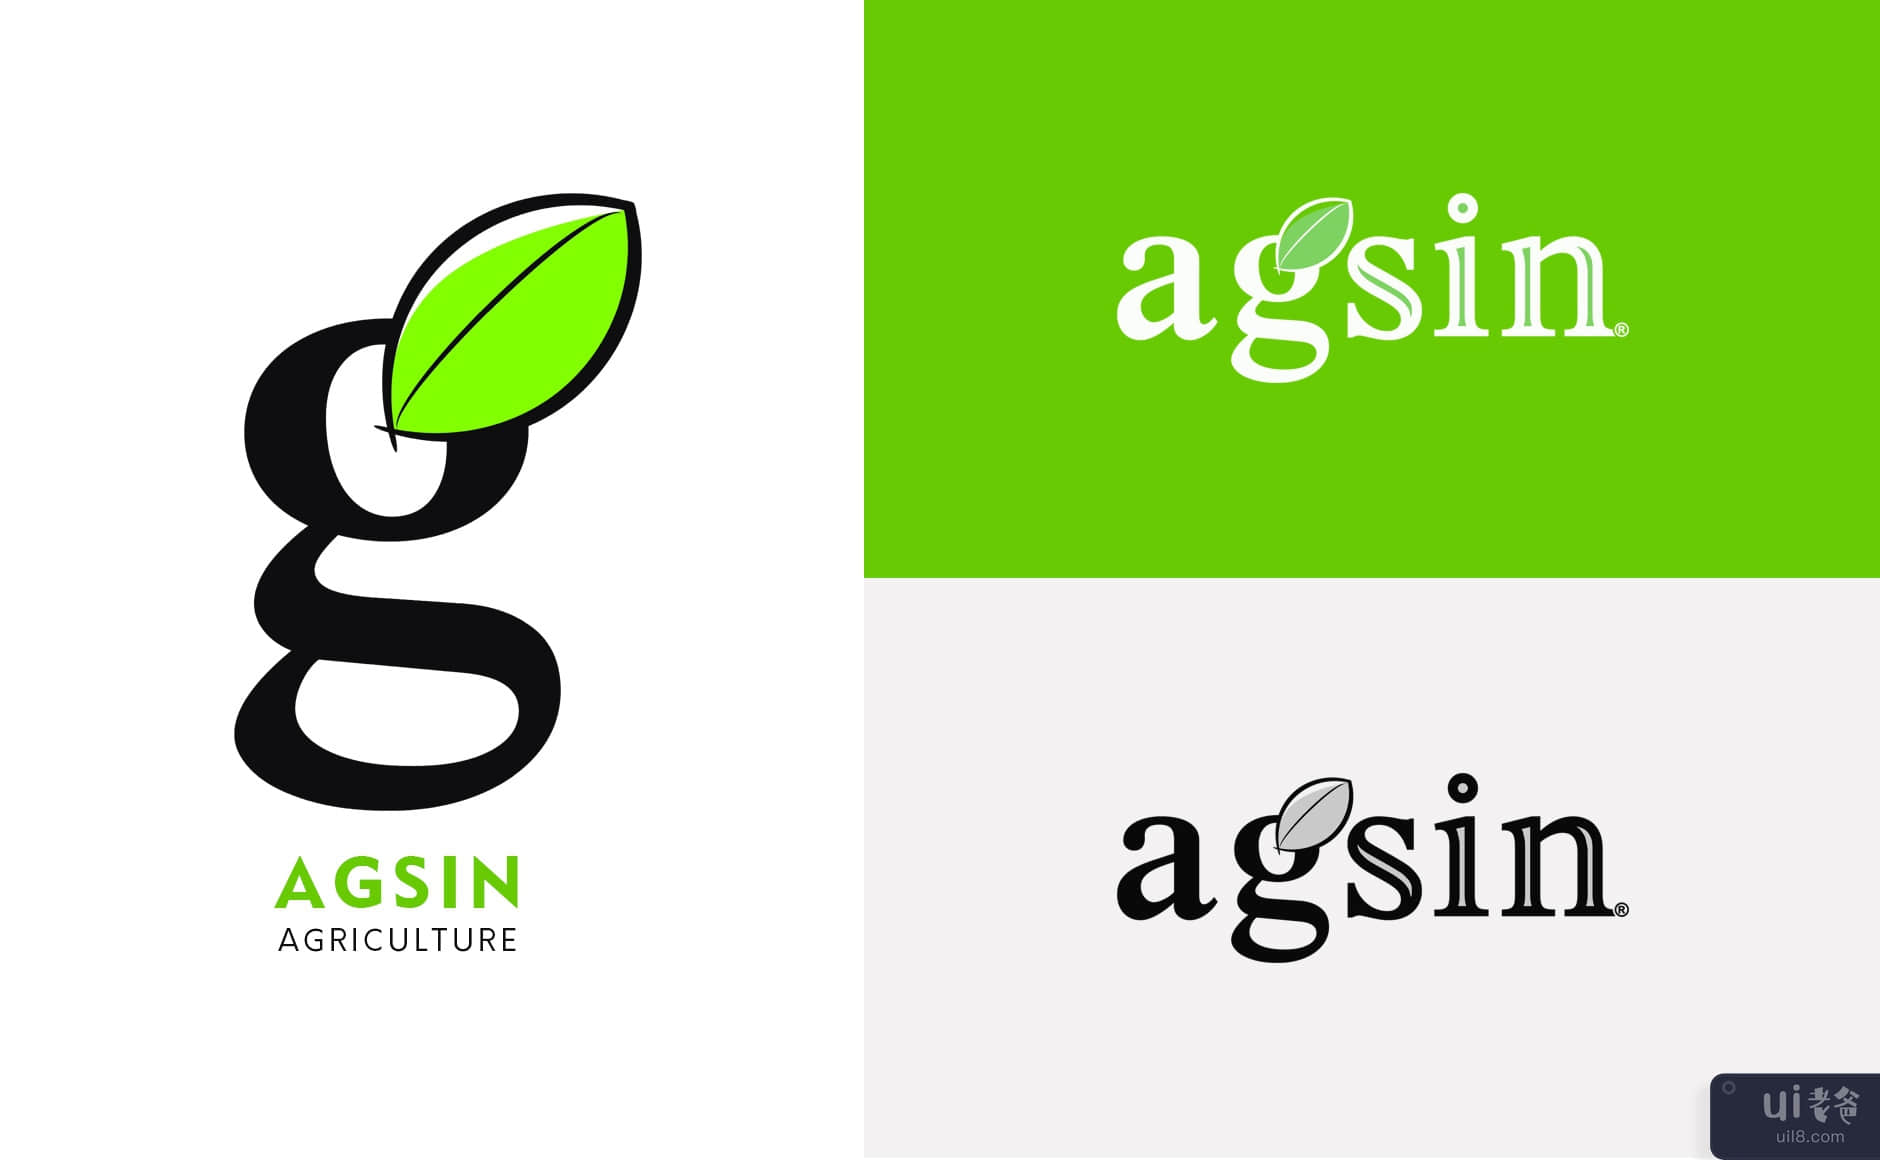 名片挑战 - Agsin 品牌标识(Business Card Challenge - Agsin Brand Identity)插图1